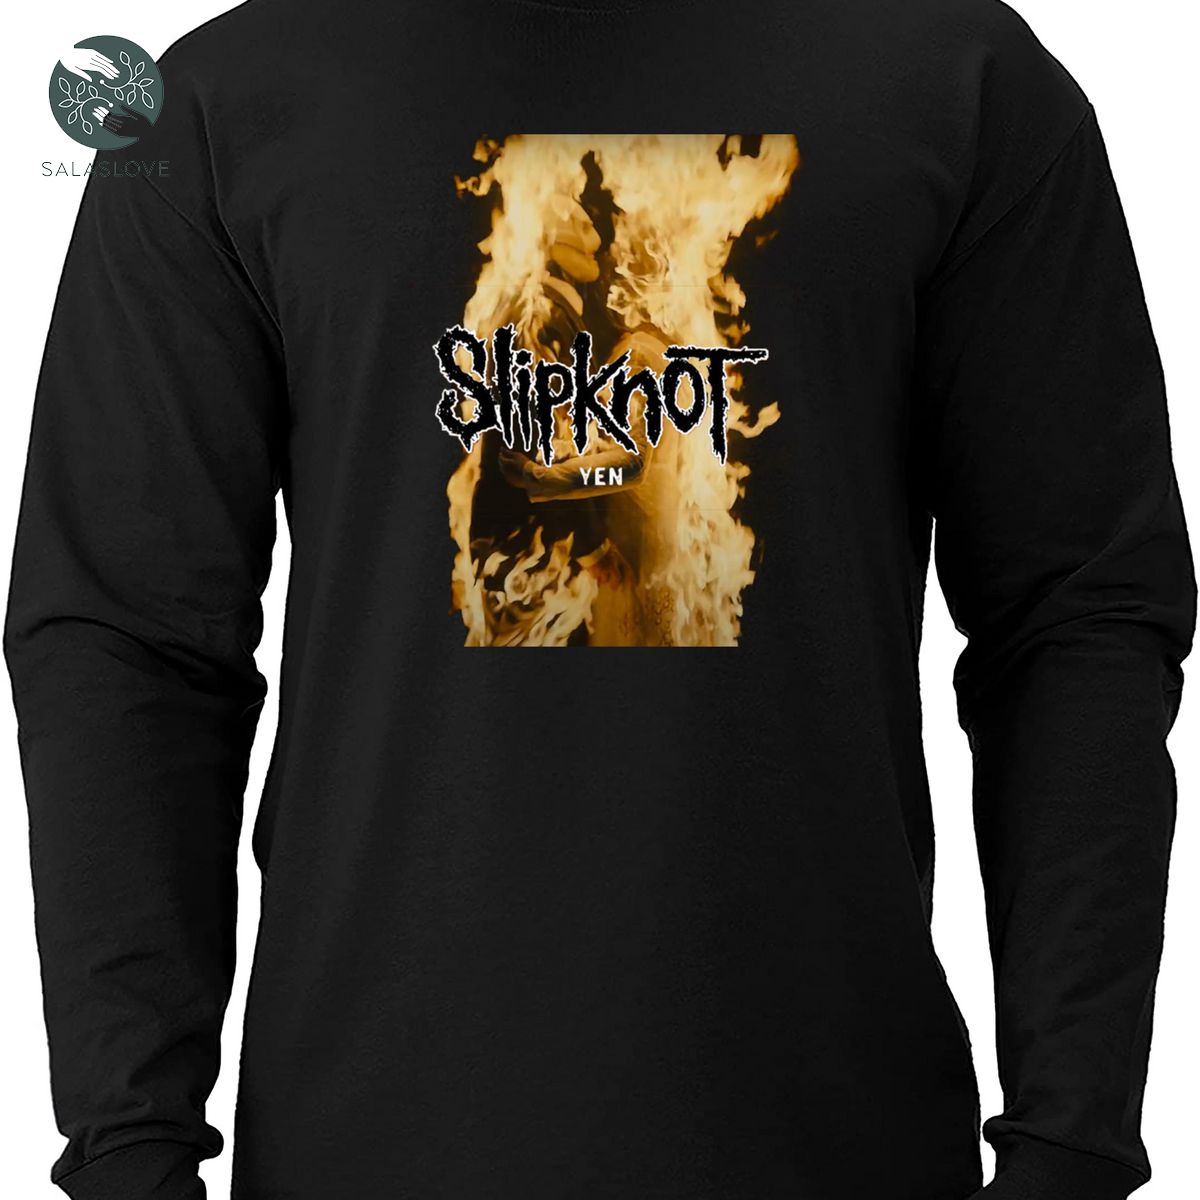 Slipknot  Music Video For New Single Yen T-shirt